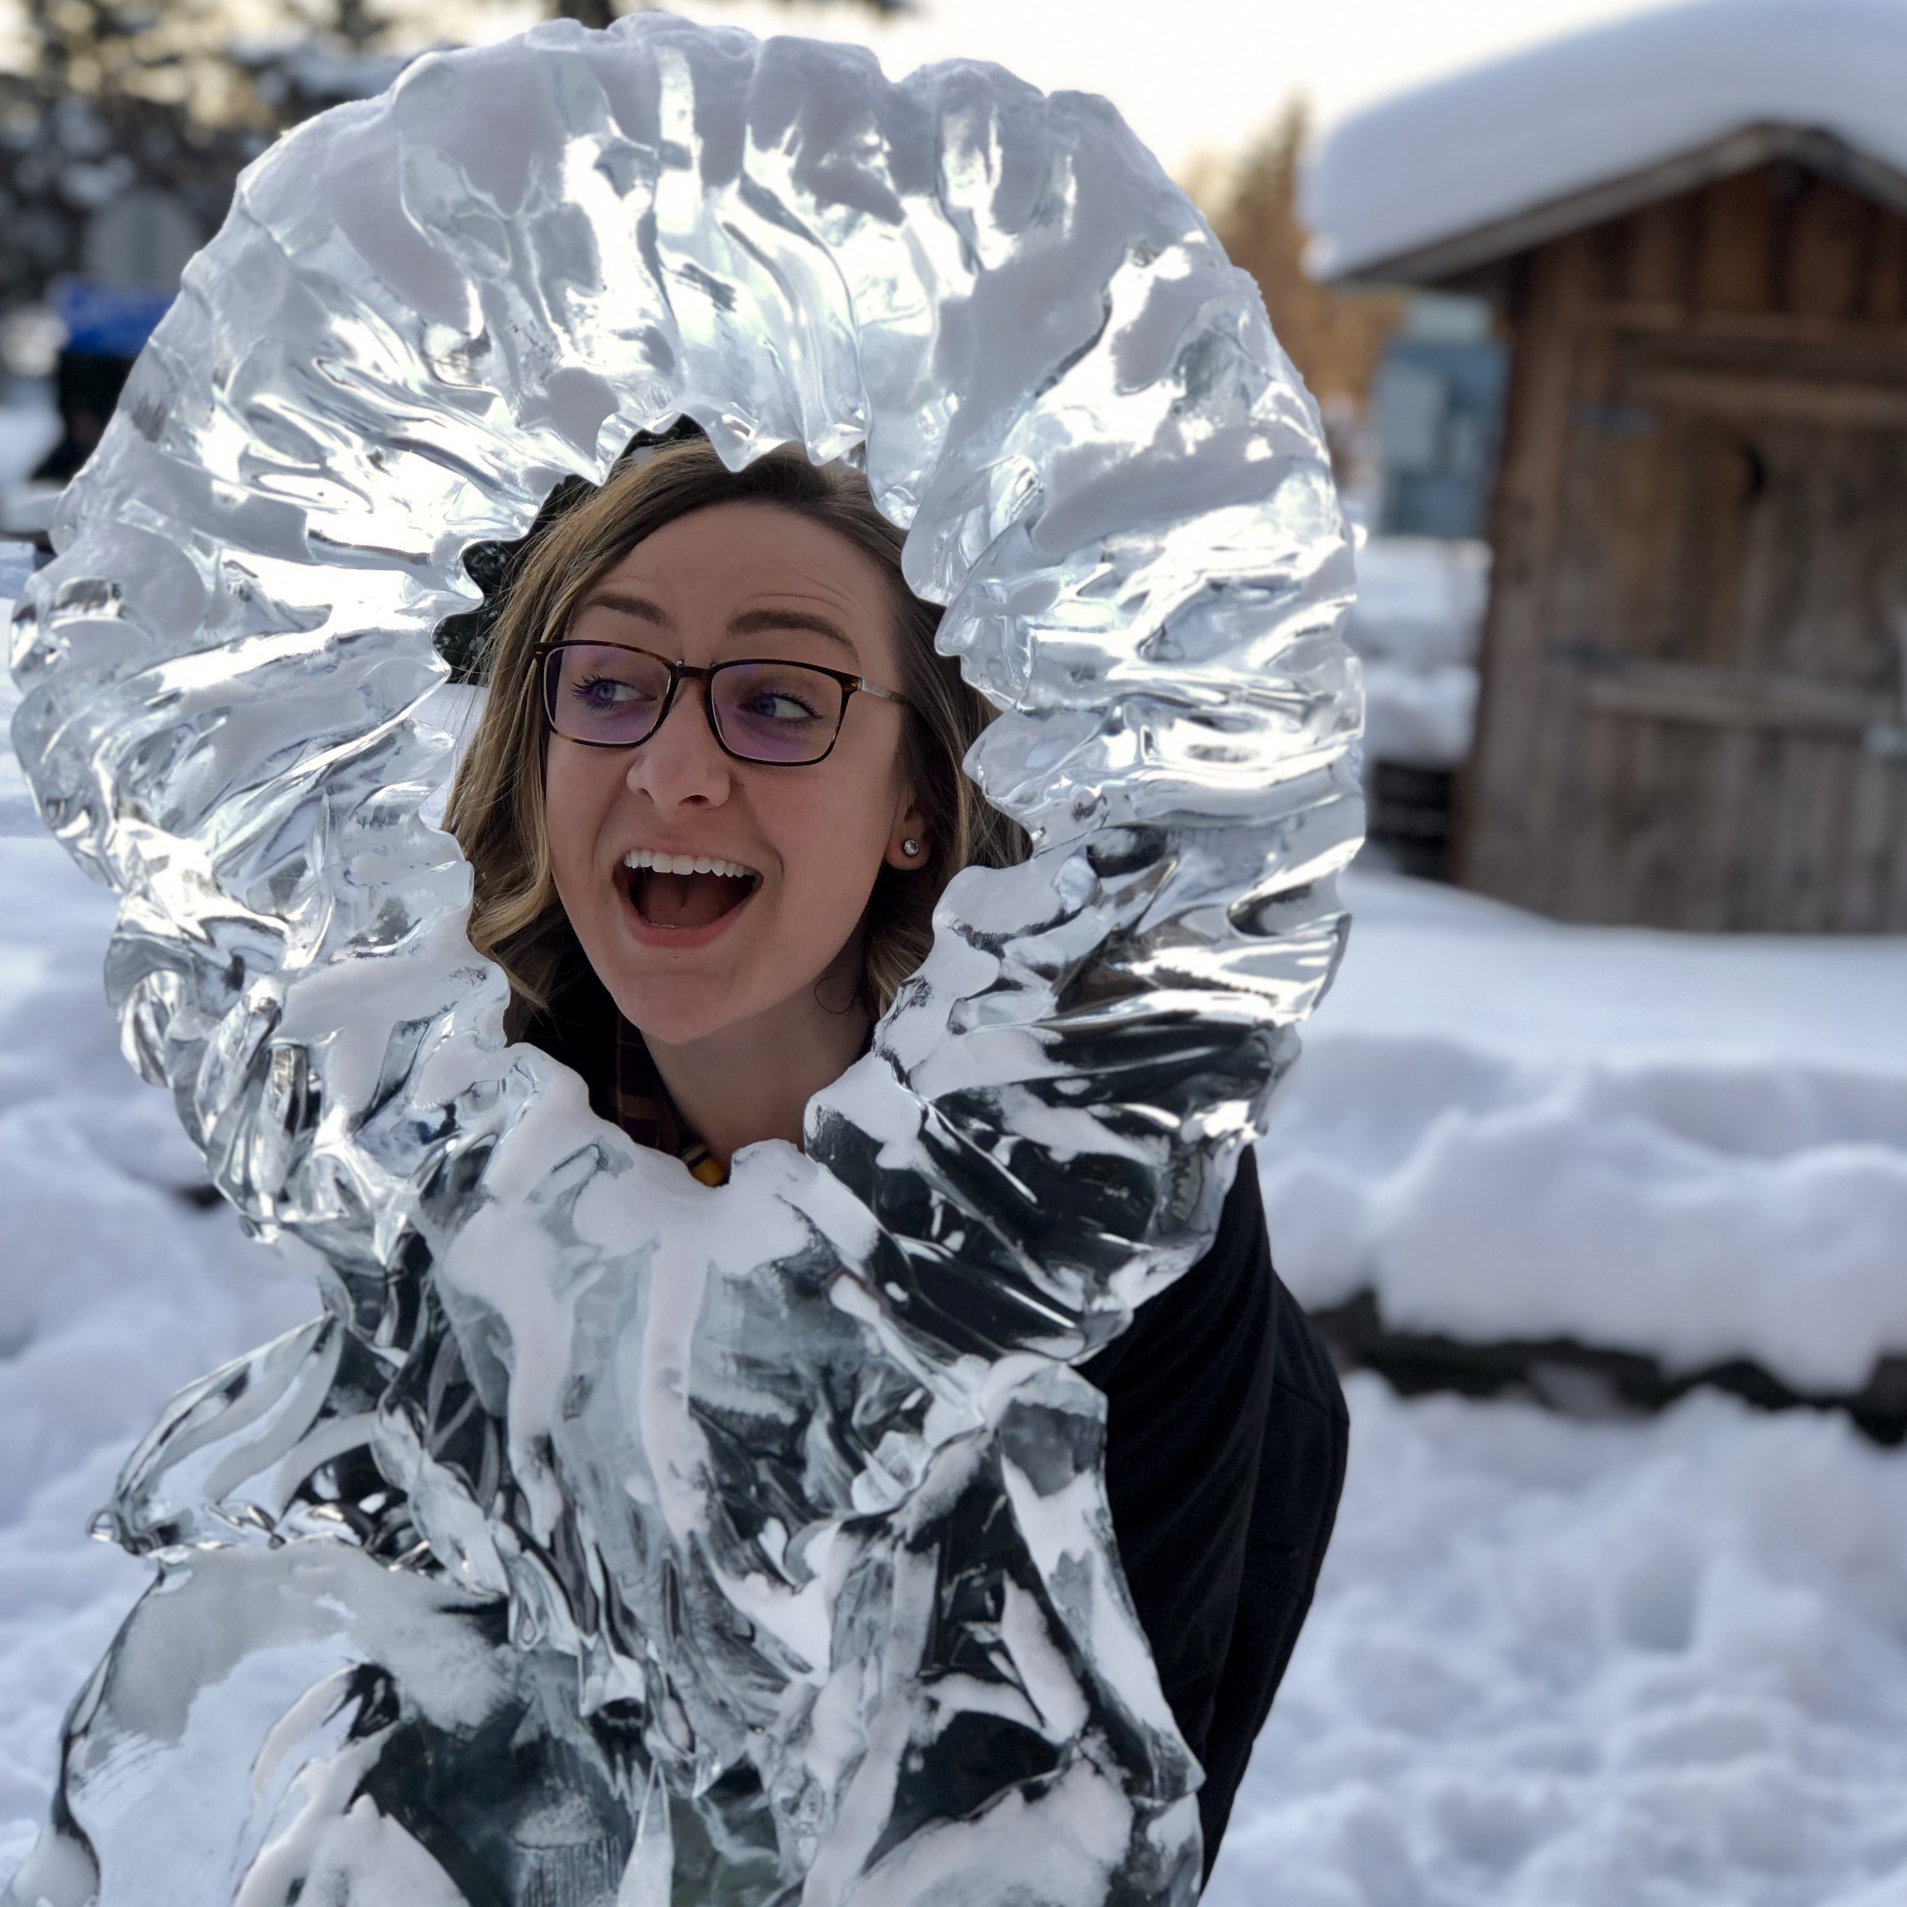 Rachel Bernhardt posing behind an ice sculpture